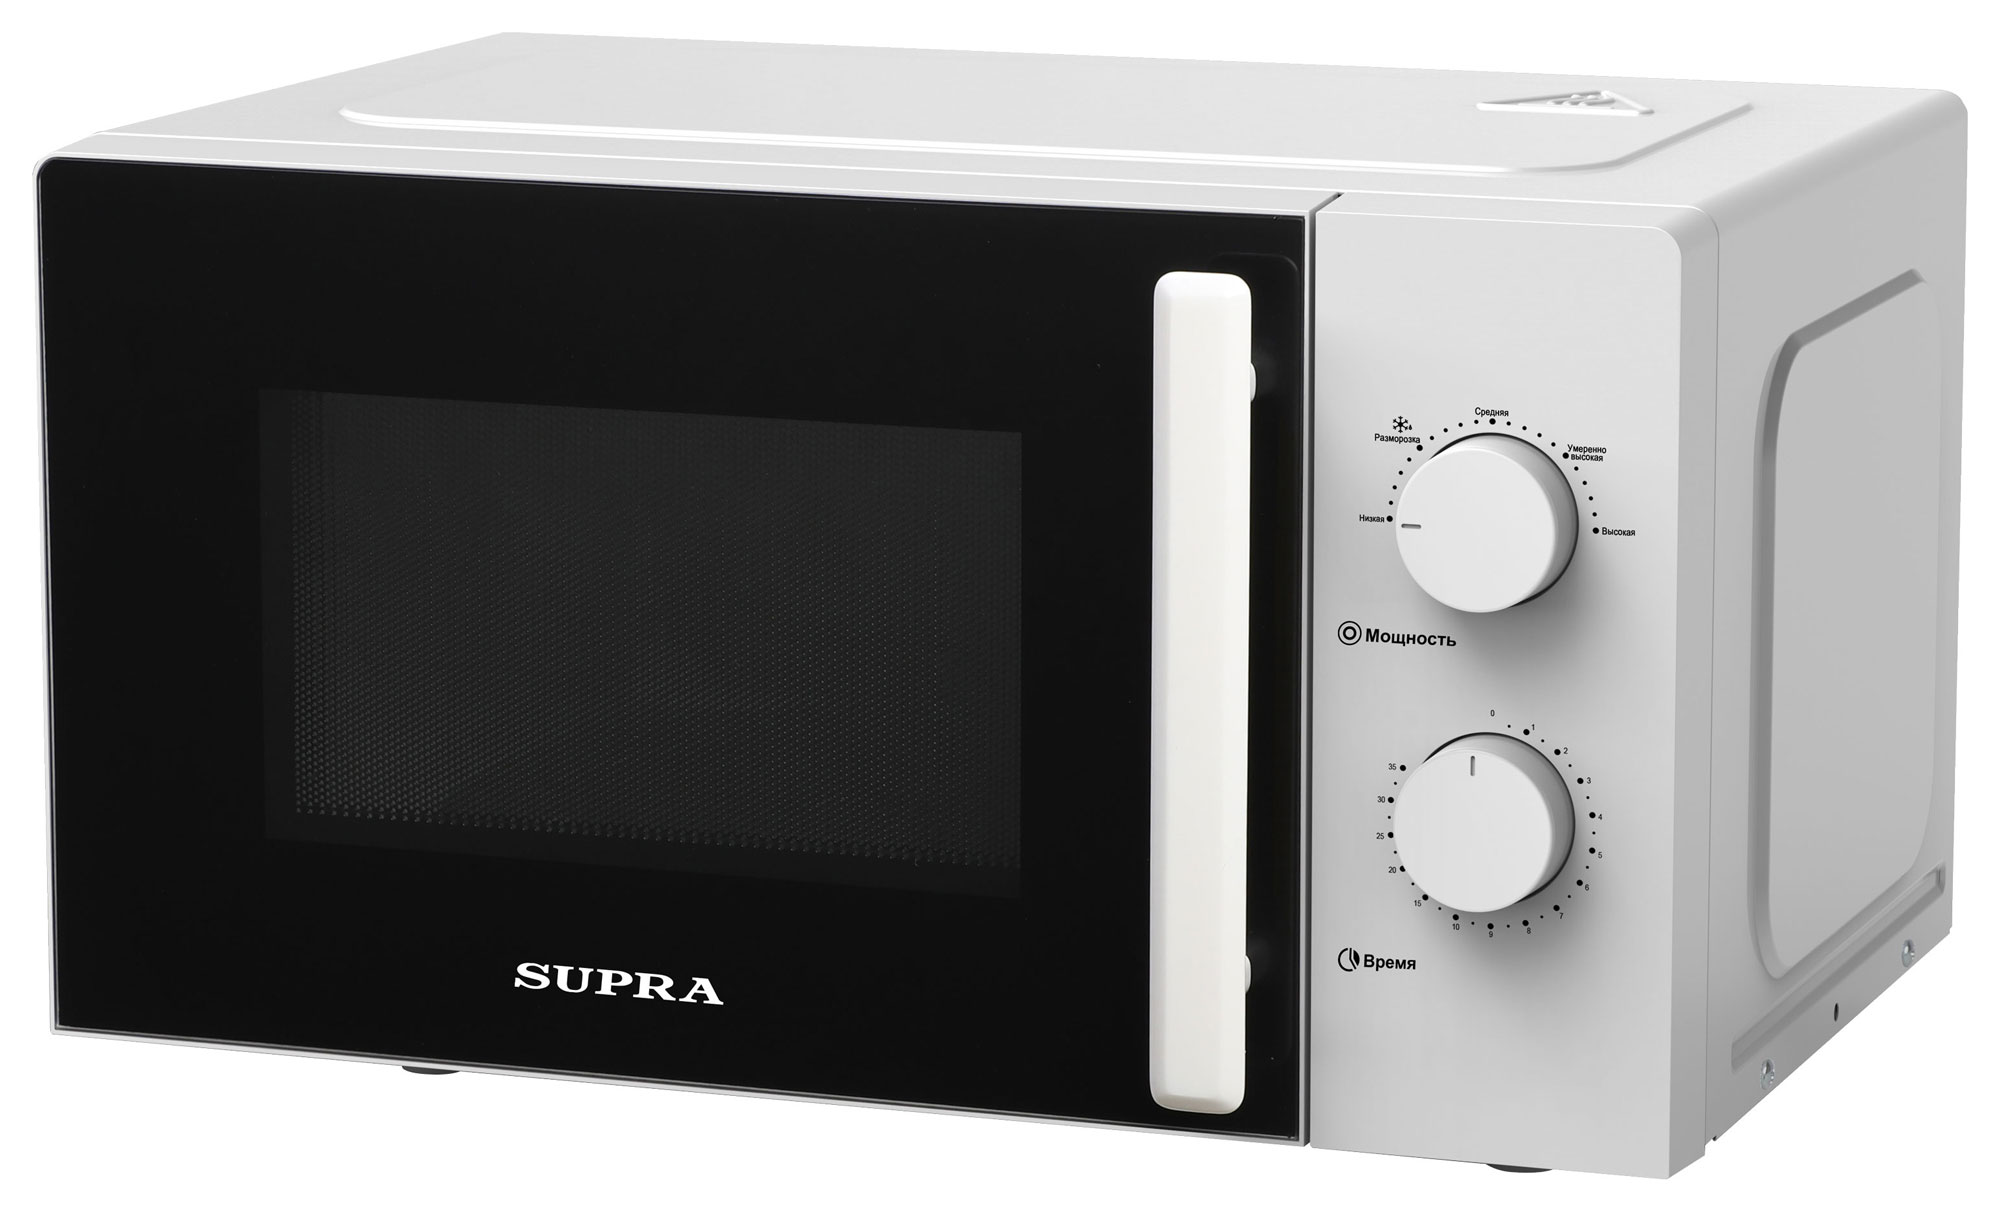 Картинка Микроволновая печь SUPRA 20MW22 по разумной цене купить в интернет магазине mall.su